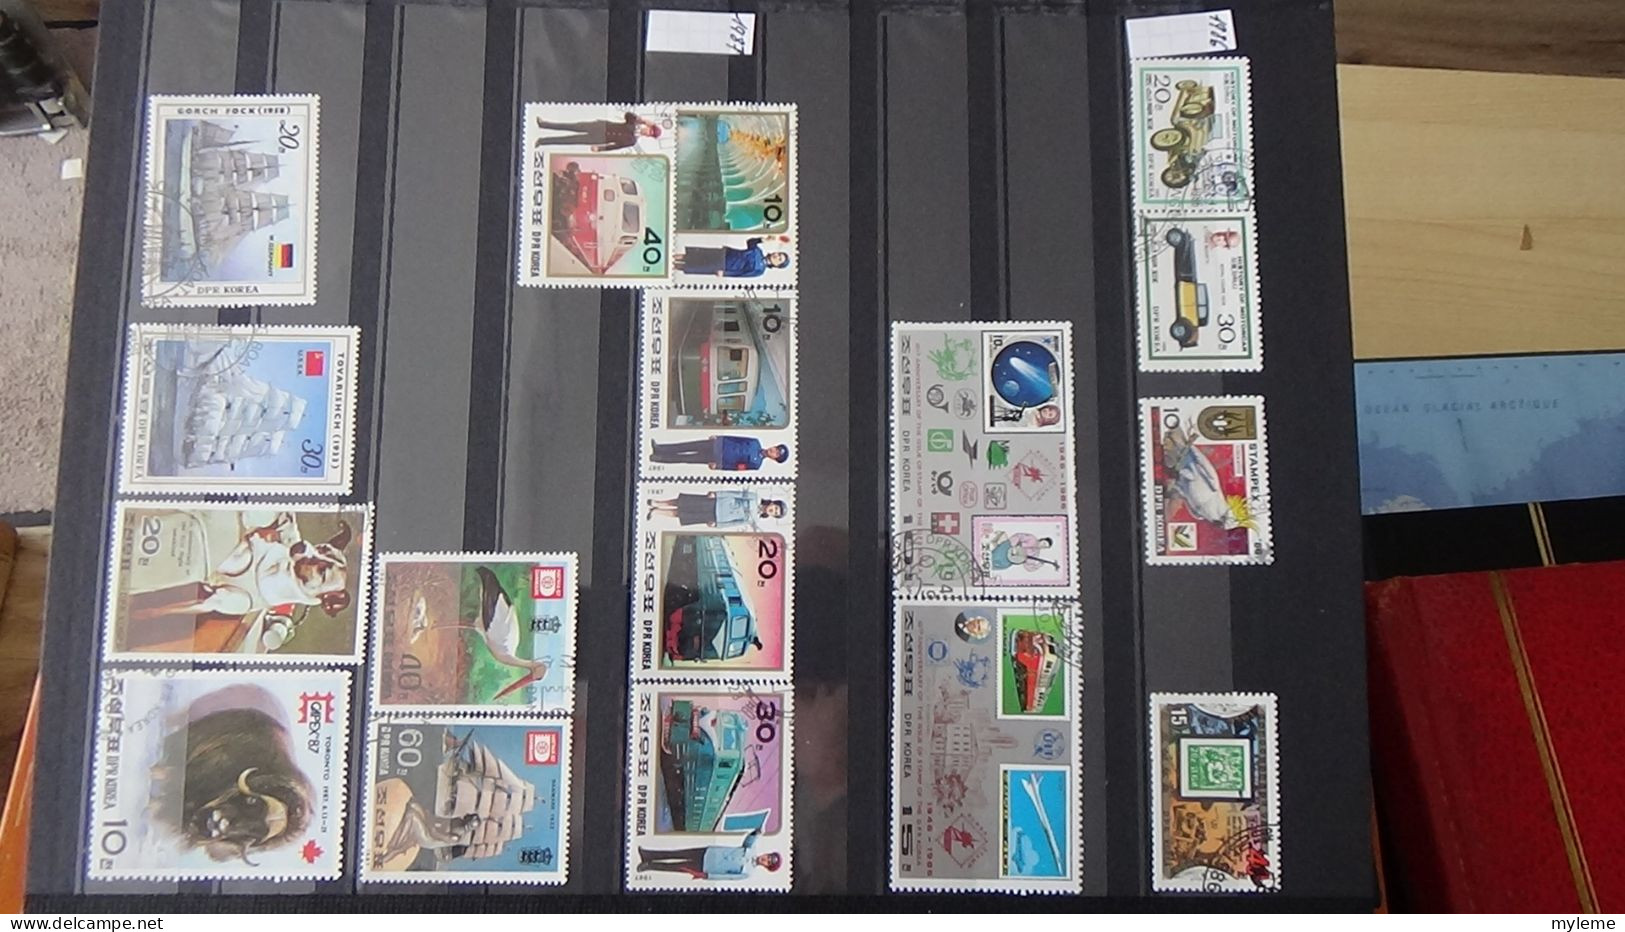 BF40 Ensemble de timbres de divers pays + France N° 257A ** surcharge garantie authentique Cote 1650 euros